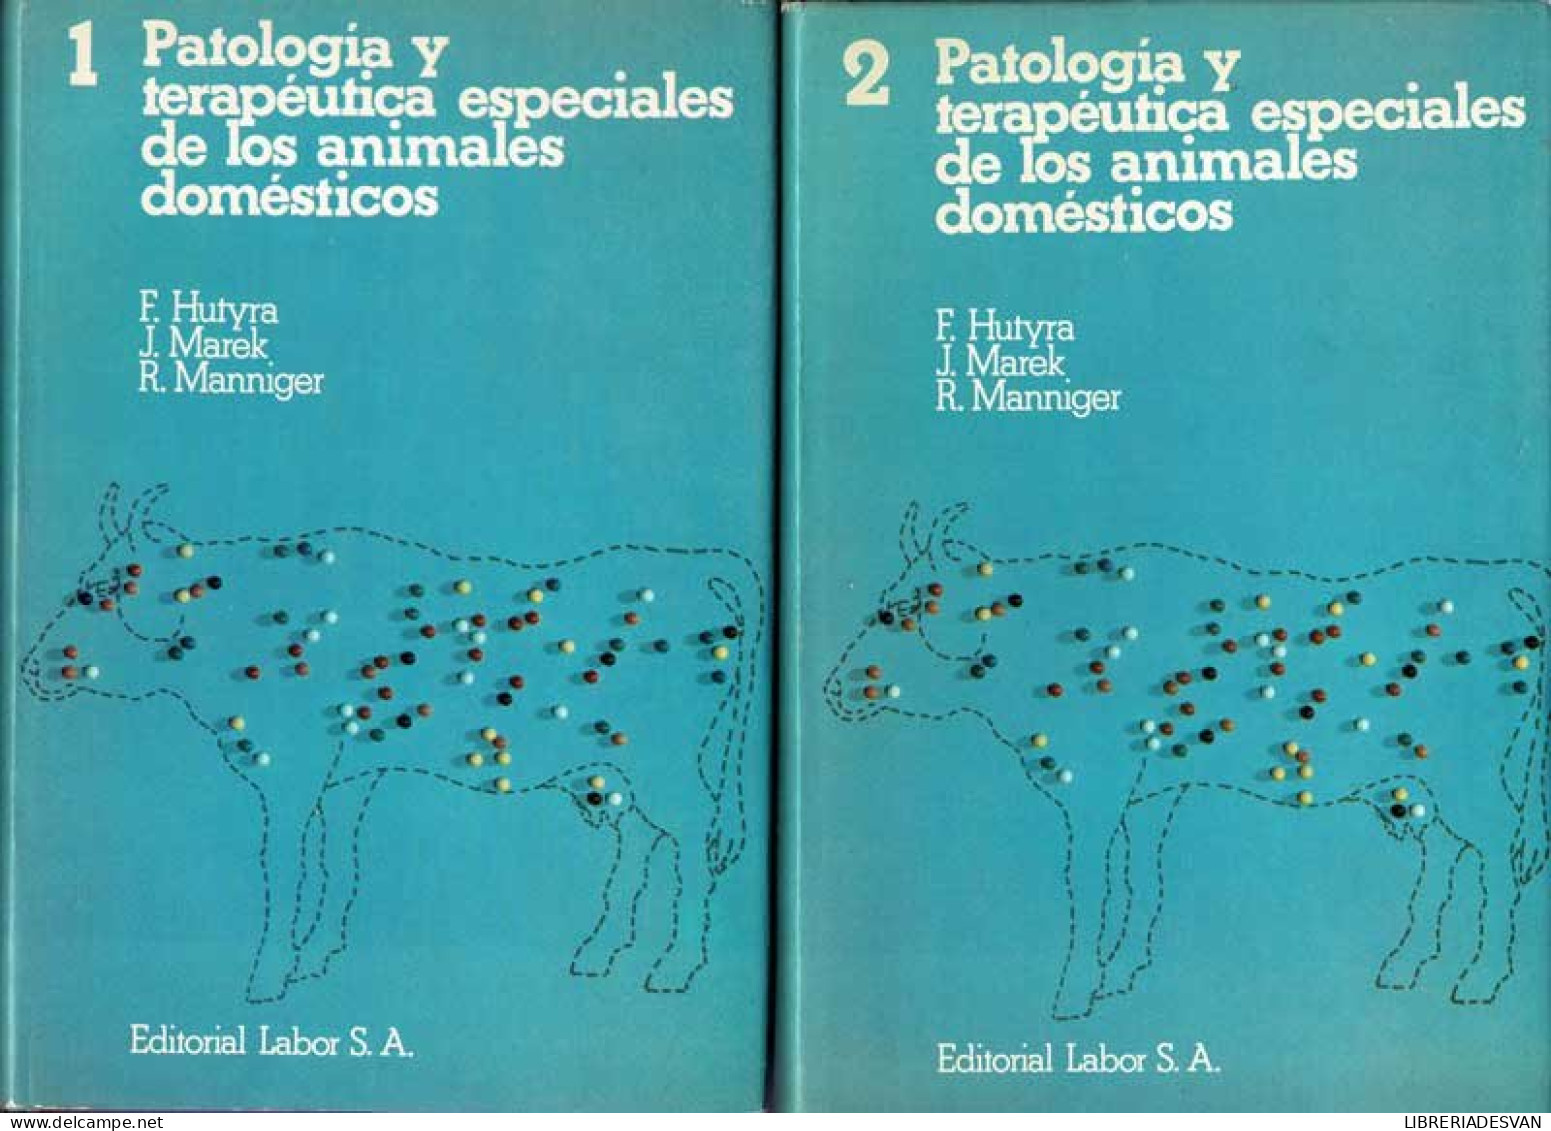 Patología Y Terapéutica Especiales De Los Animales Domésticos. 2 Volúmenes - F. Hutyra, J. Marek, R. Manniger - Pratique